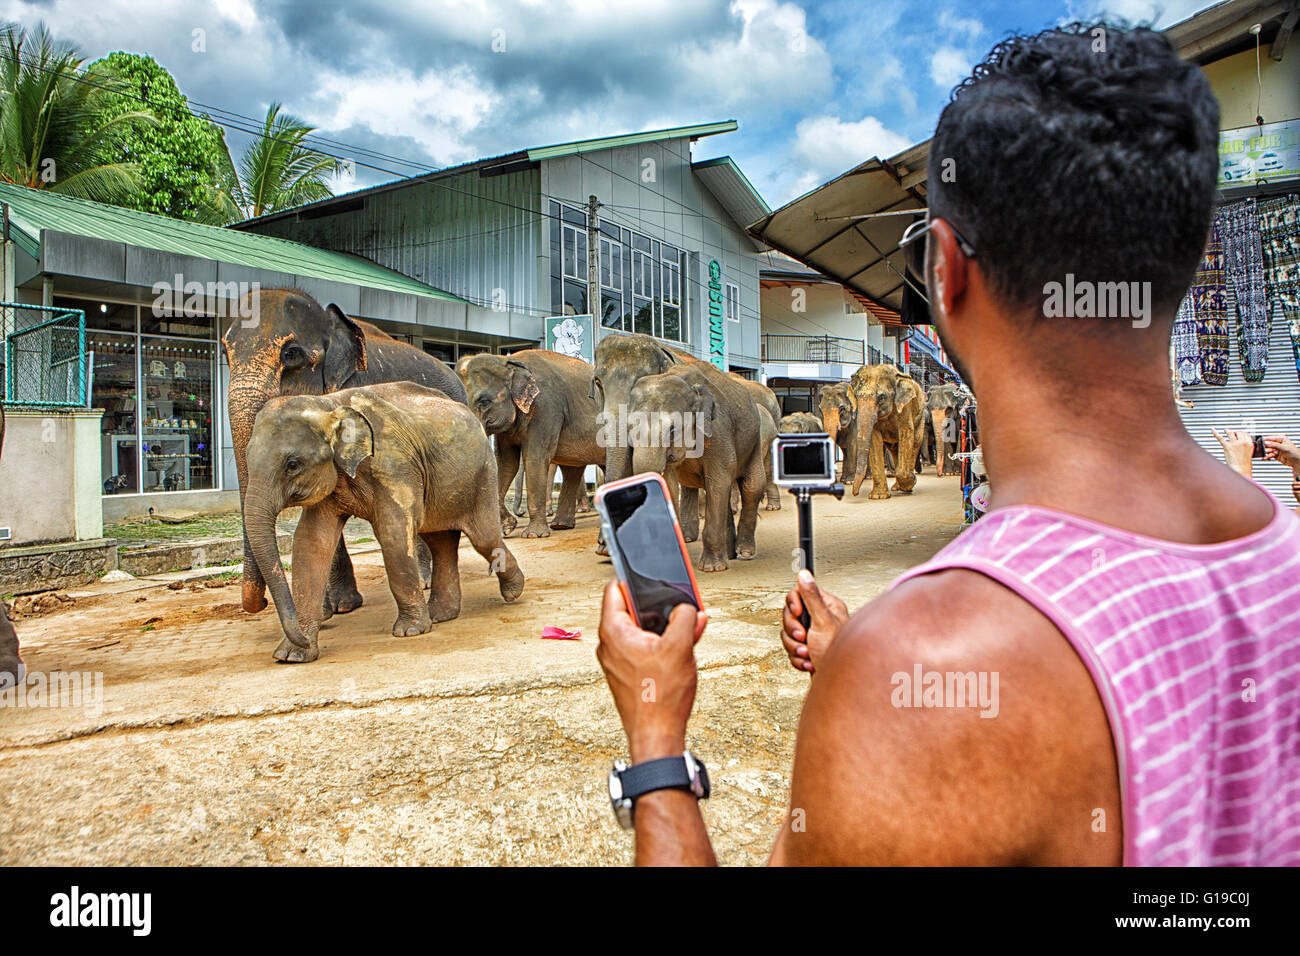 Les touristes à la recherche d'éléphants à Pinnawela orphelinat des éléphants, des éléphants d'Asie sauvages Banque D'Images